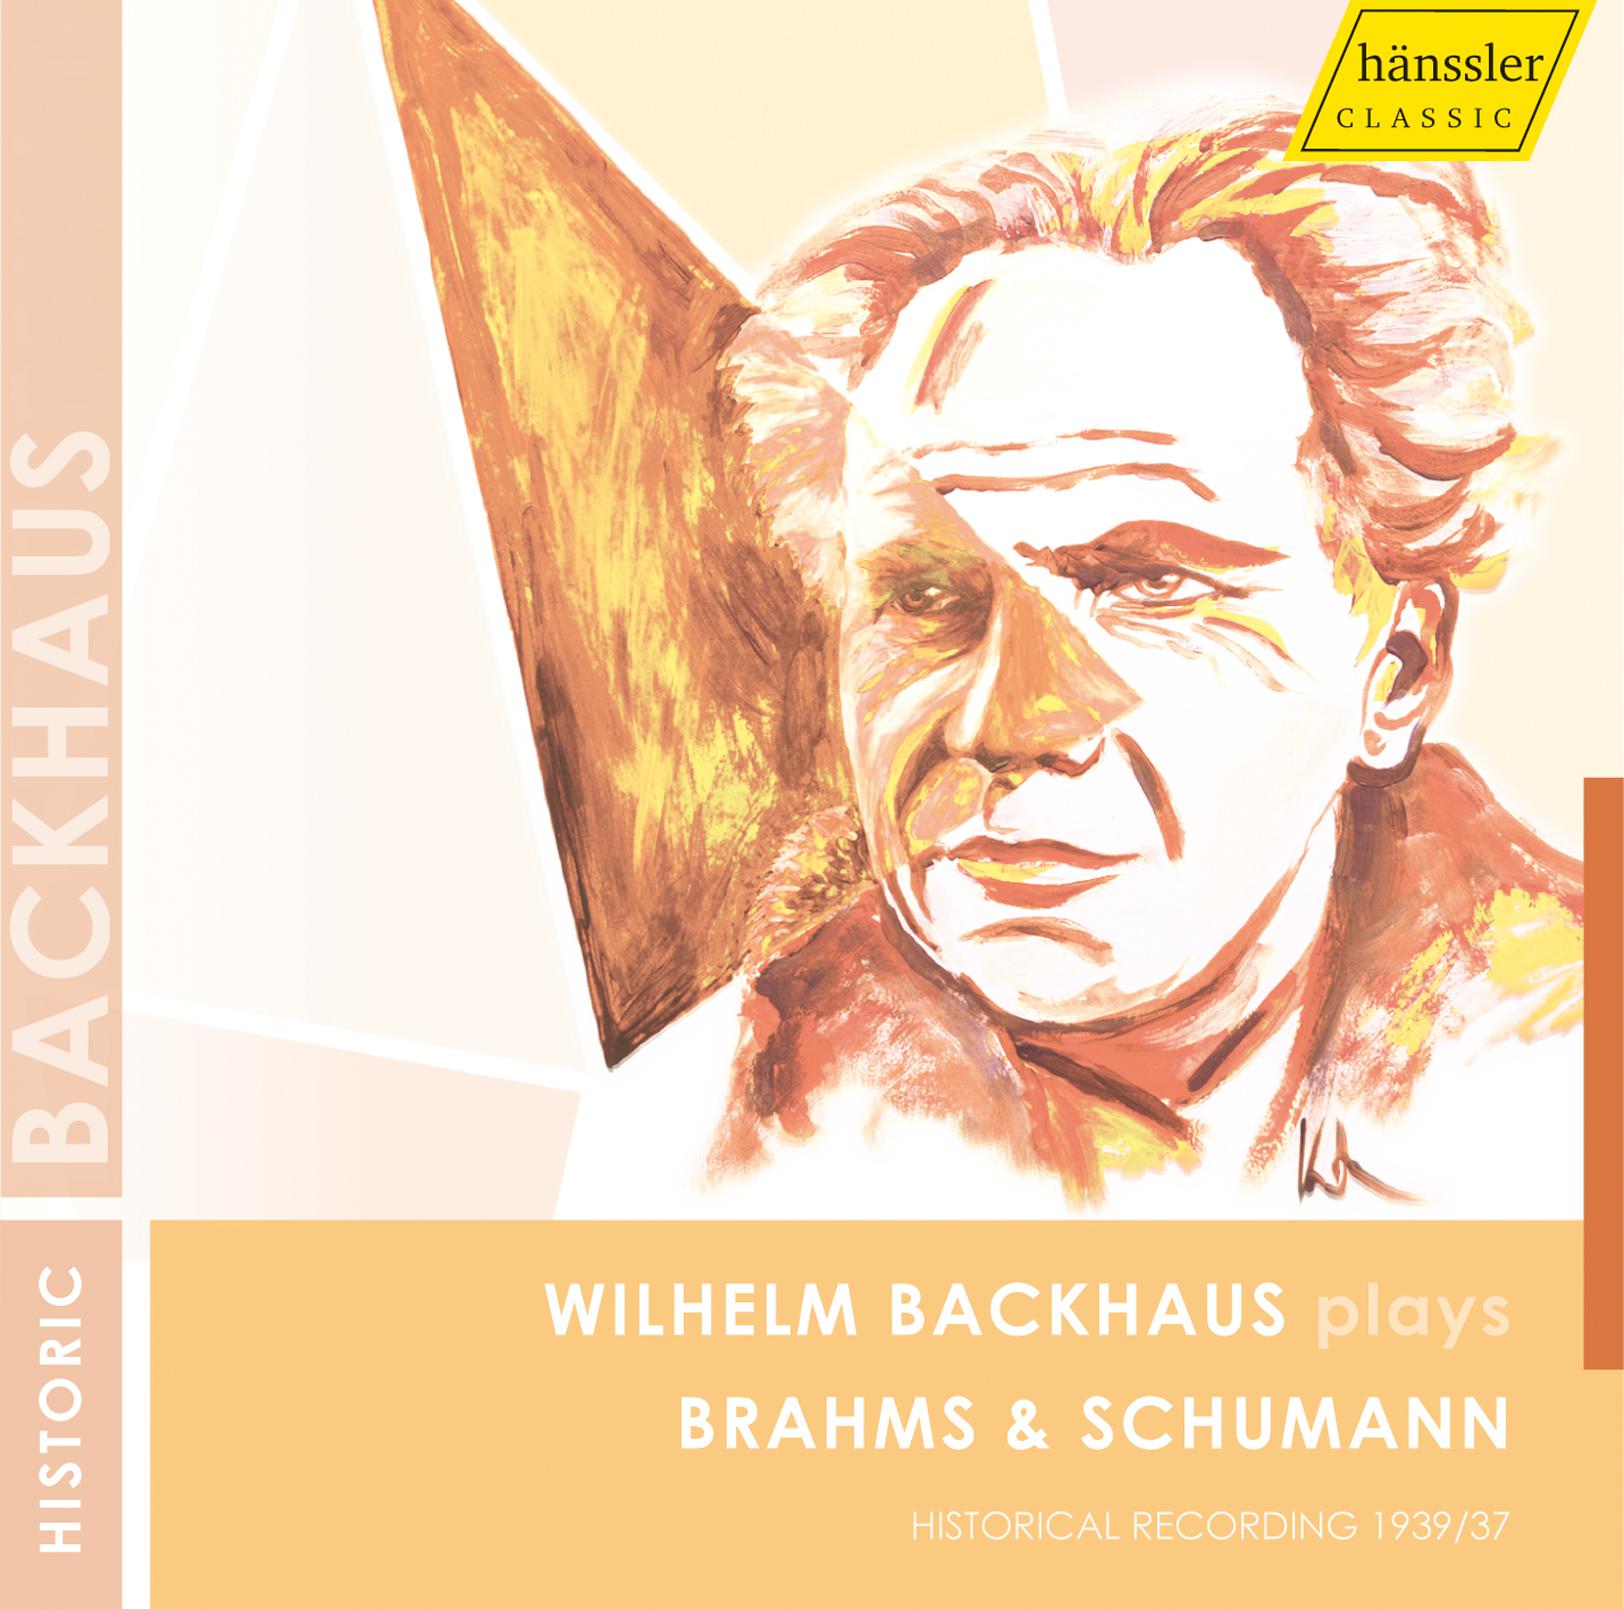 Brahms: Piano Concerto No. 2 in B-Flat Major, Op. 83 - Schumann: Fantasie in C Major, Op. 17 (Recorded 1937 & 1939)